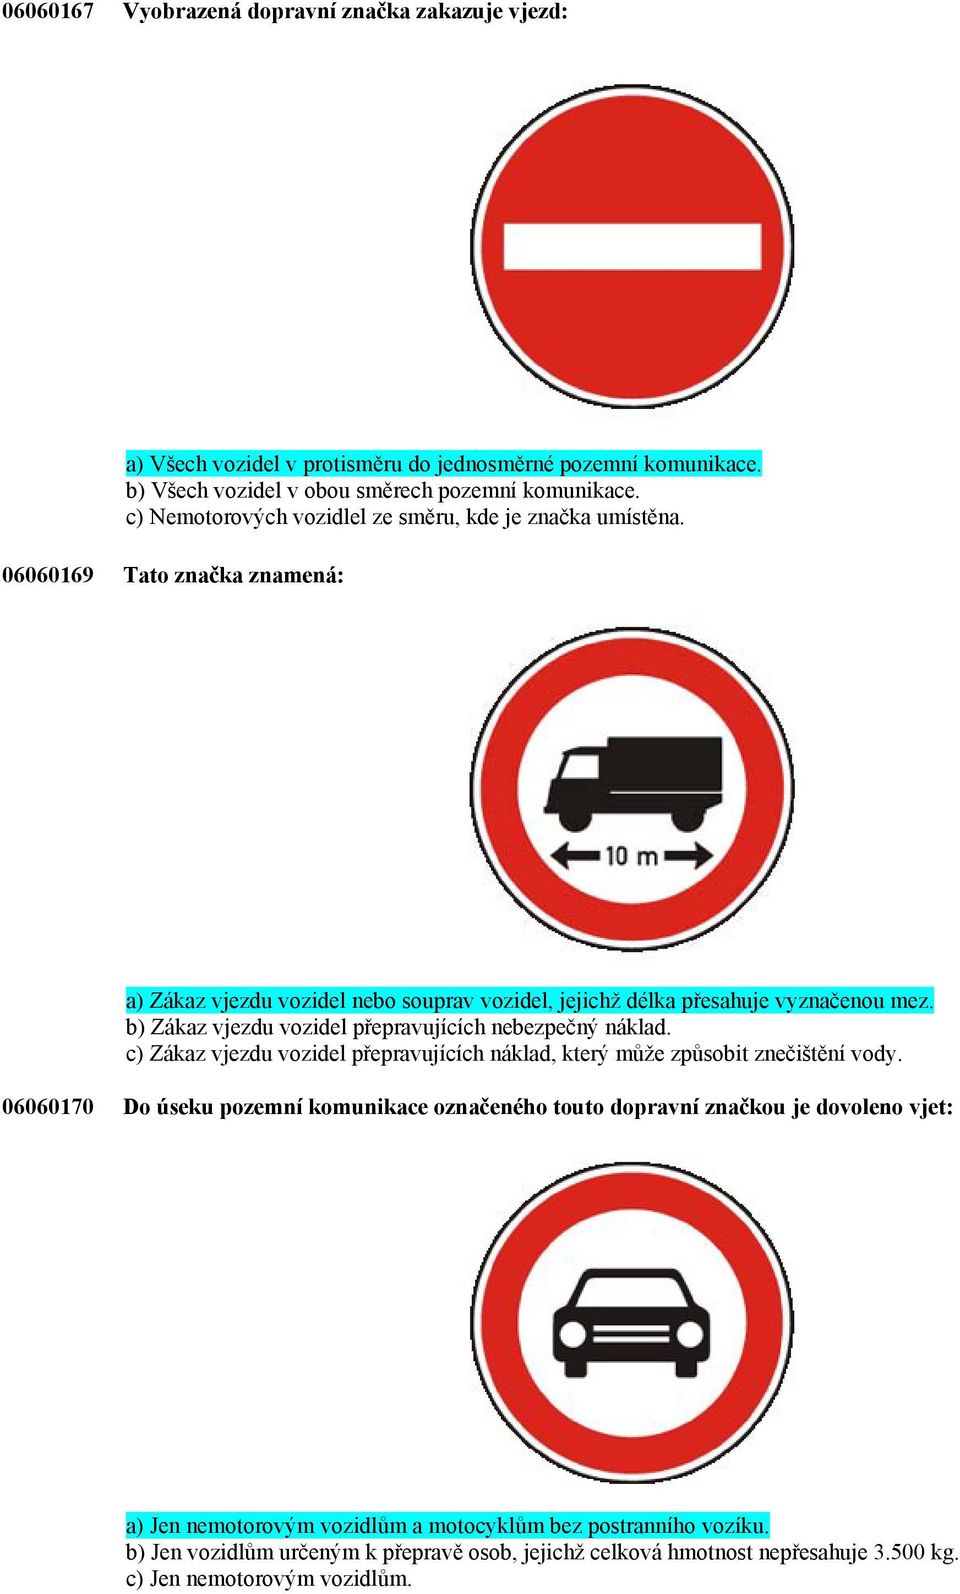 b) Zákaz vjezdu vozidel přepravujících nebezpečný náklad. c) Zákaz vjezdu vozidel přepravujících náklad, který může způsobit znečištění vody.